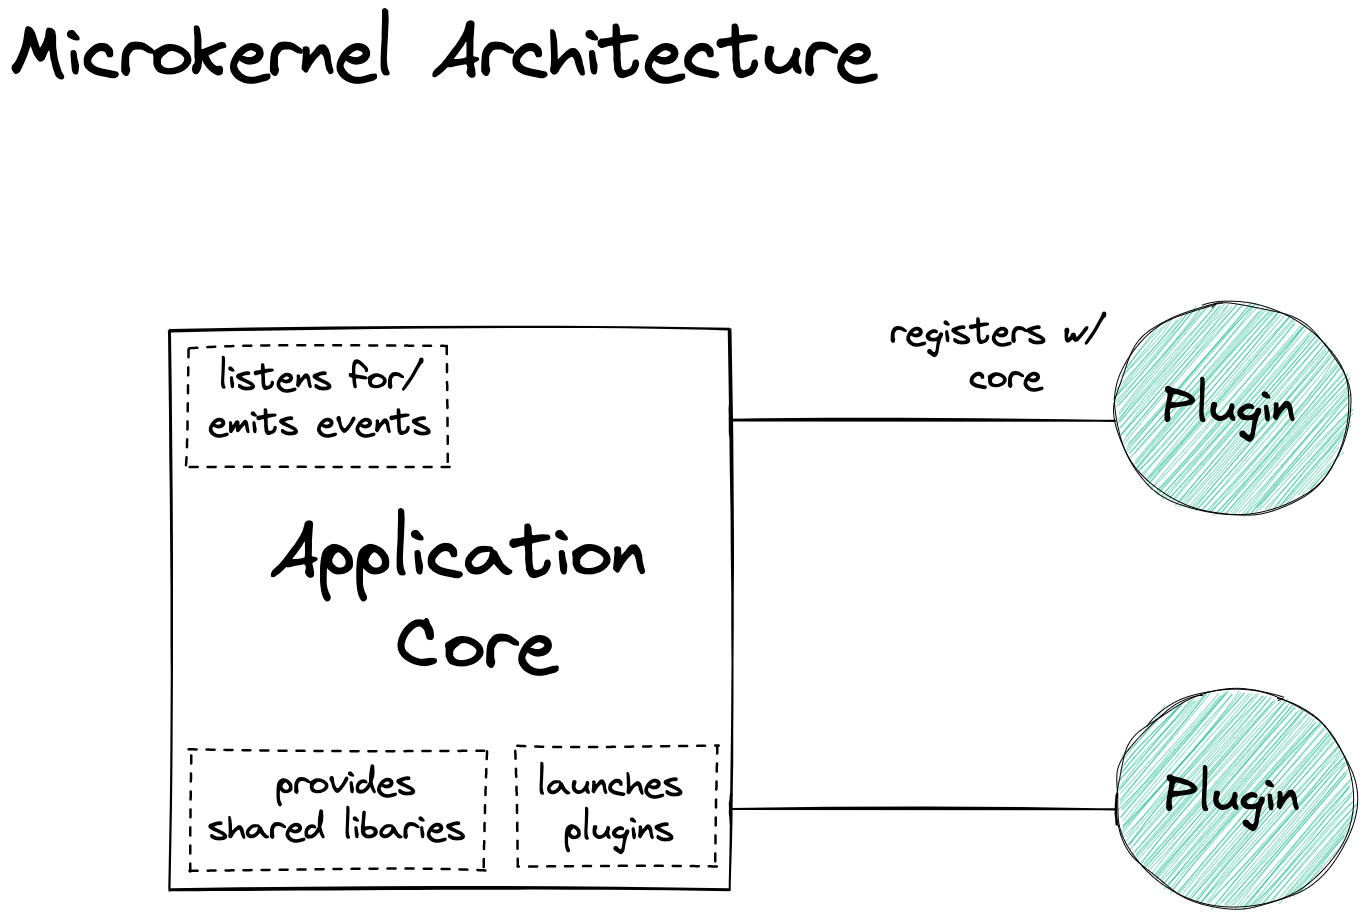 Microkernel Architecture diagram